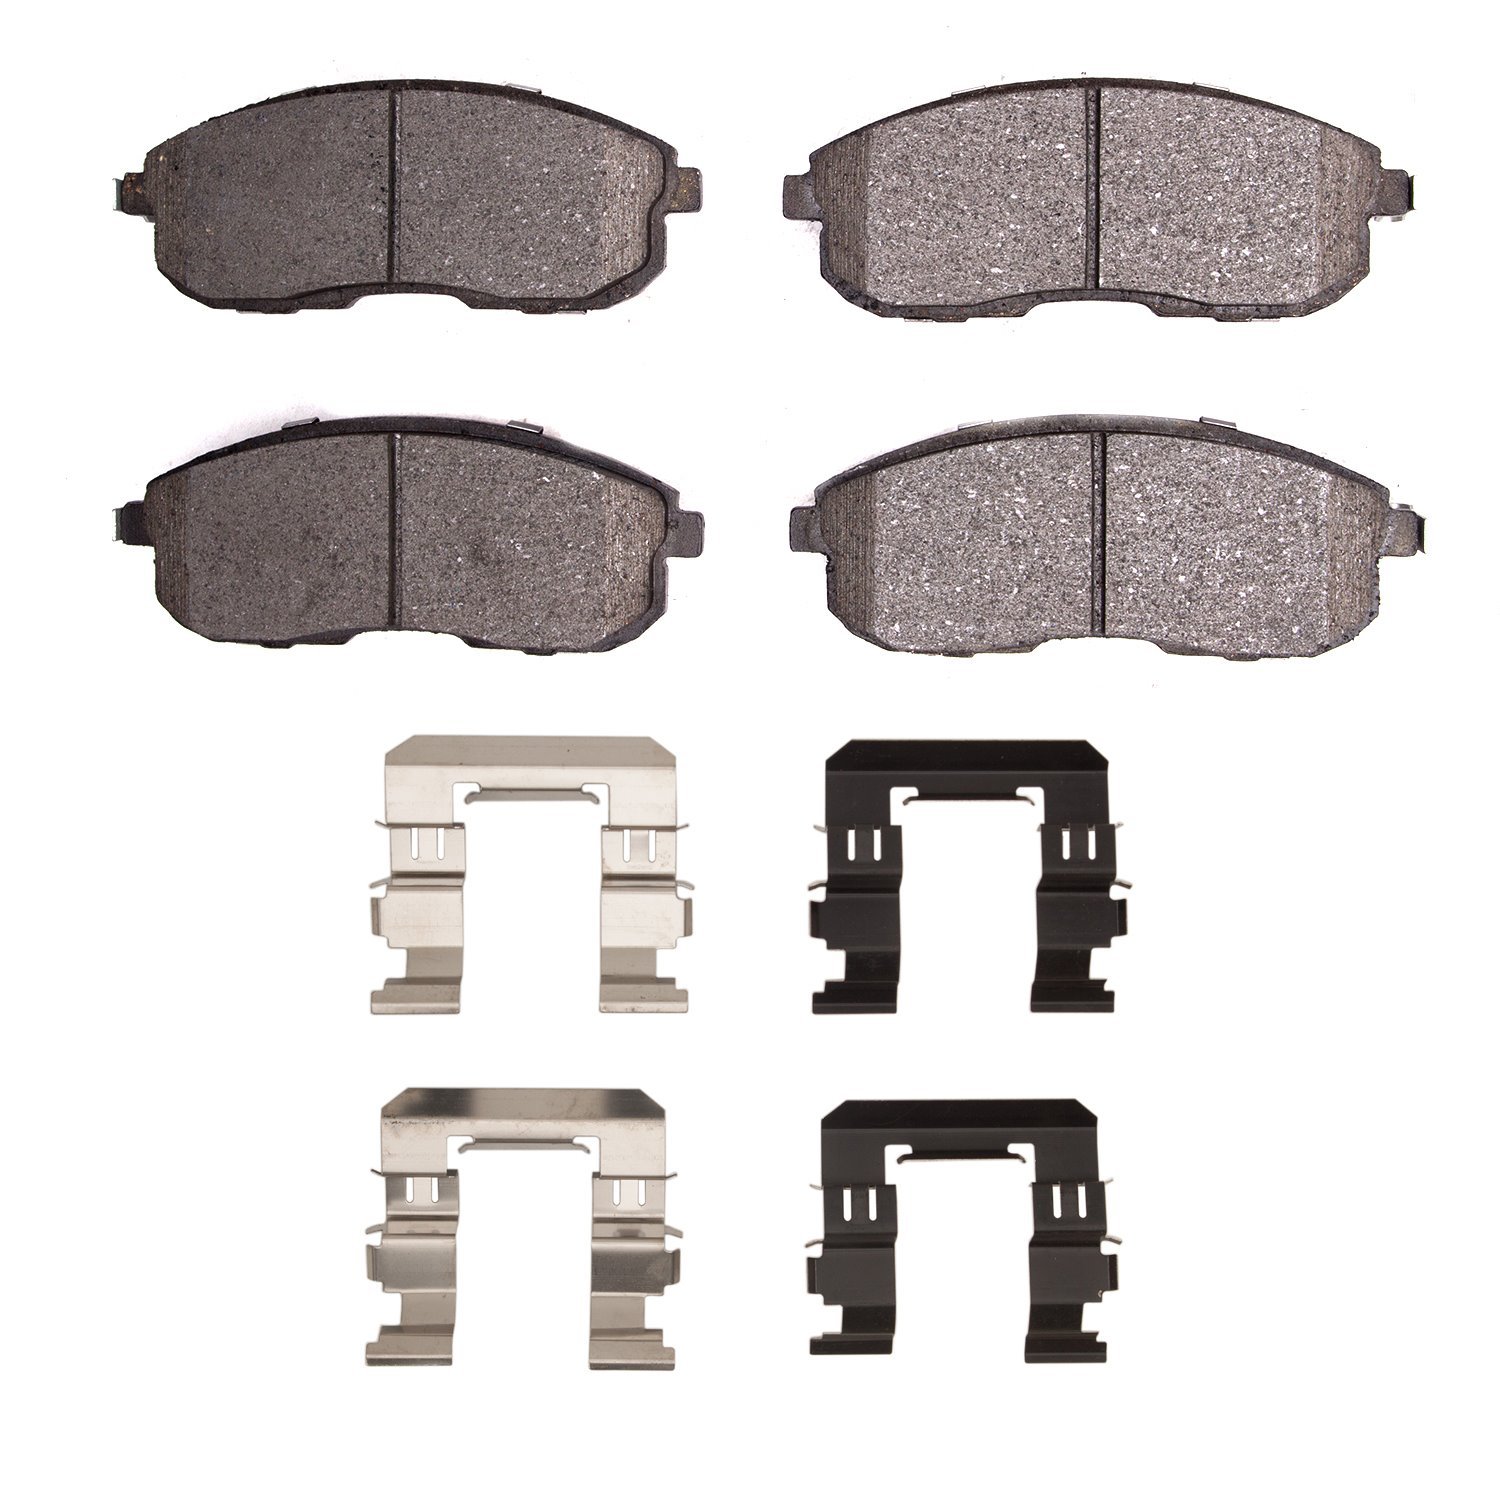 1310-0815-12 3000-Series Ceramic Brake Pads & Hardware Kit, 2007-2014 Suzuki, Position: Front